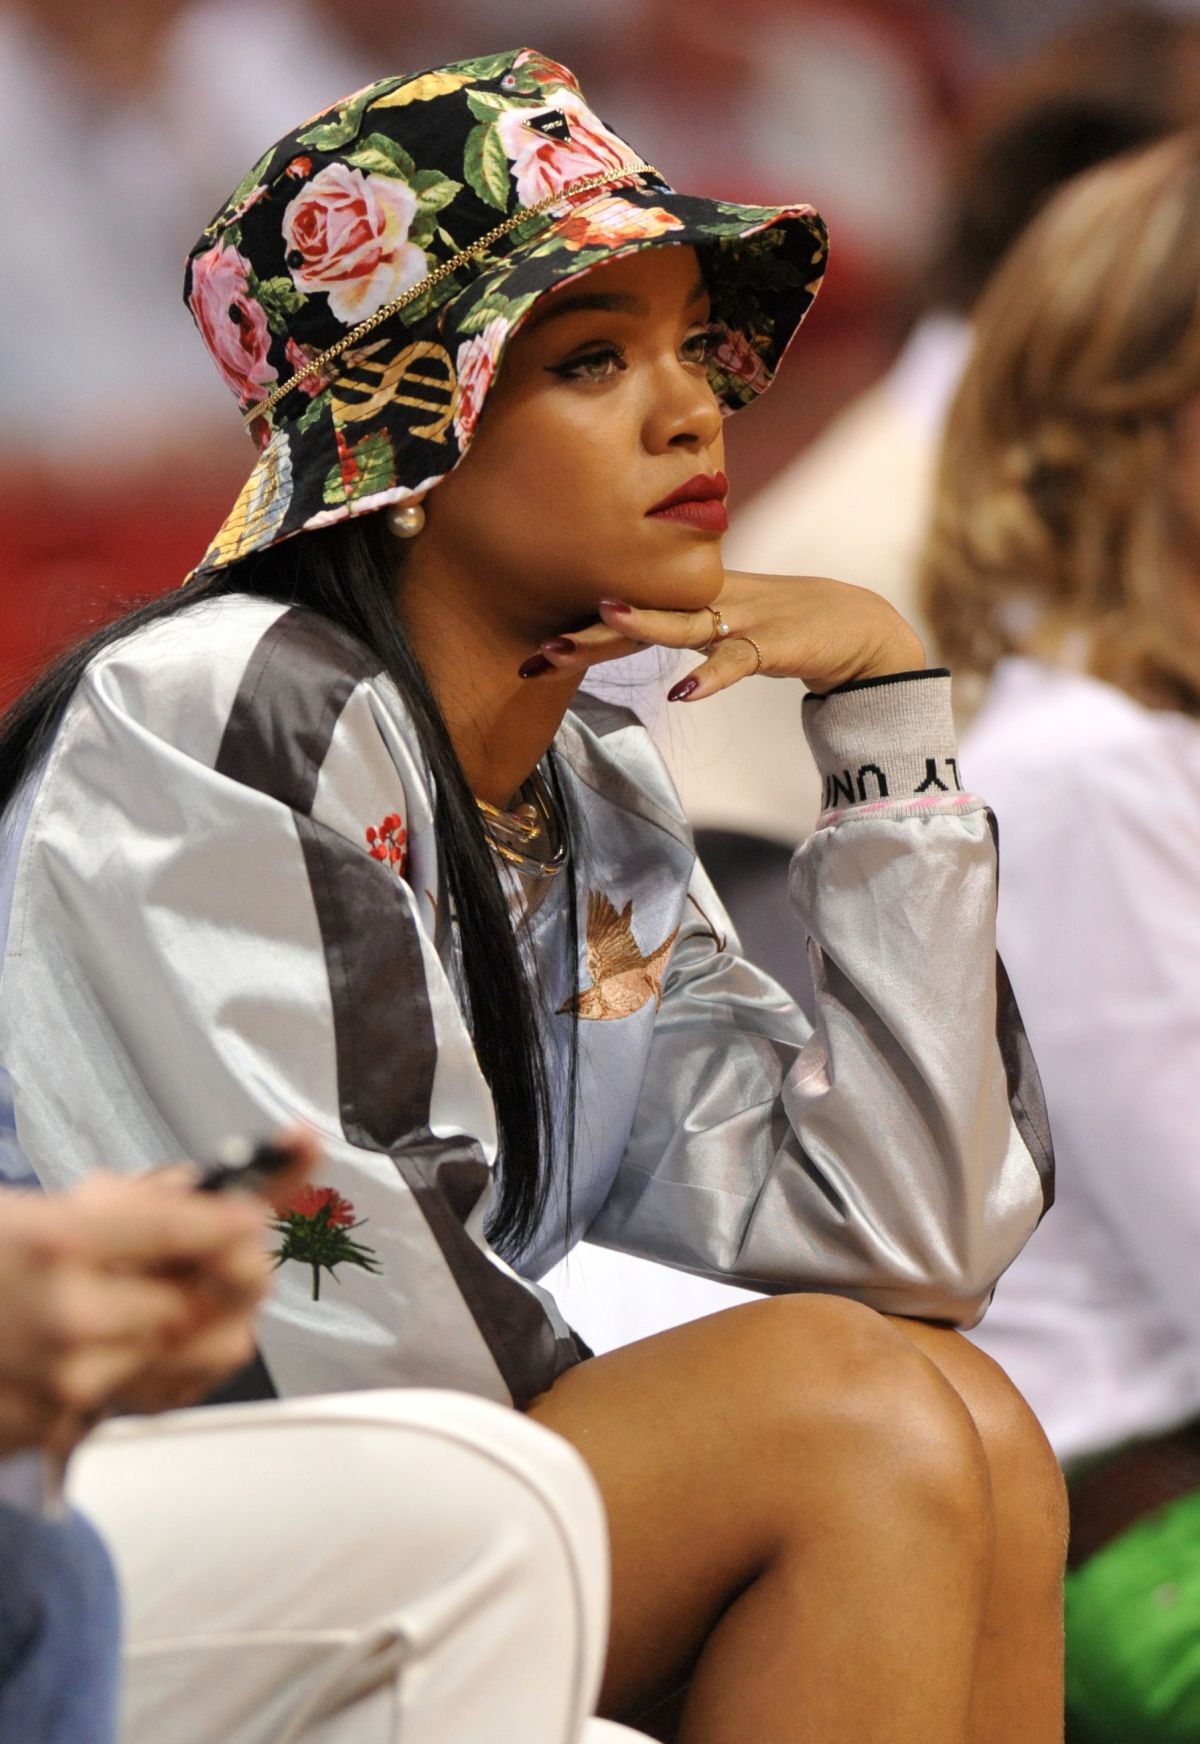 Rihanna trở nên nữ tính lạ thường khi đội chiếc bucket hoa đi xem một trận bóng. Dù ở phong cách nào, Rihanna vẫn không bao giờ thiếu đi món phụ kiện yêu thích của mình: Bucket hat.